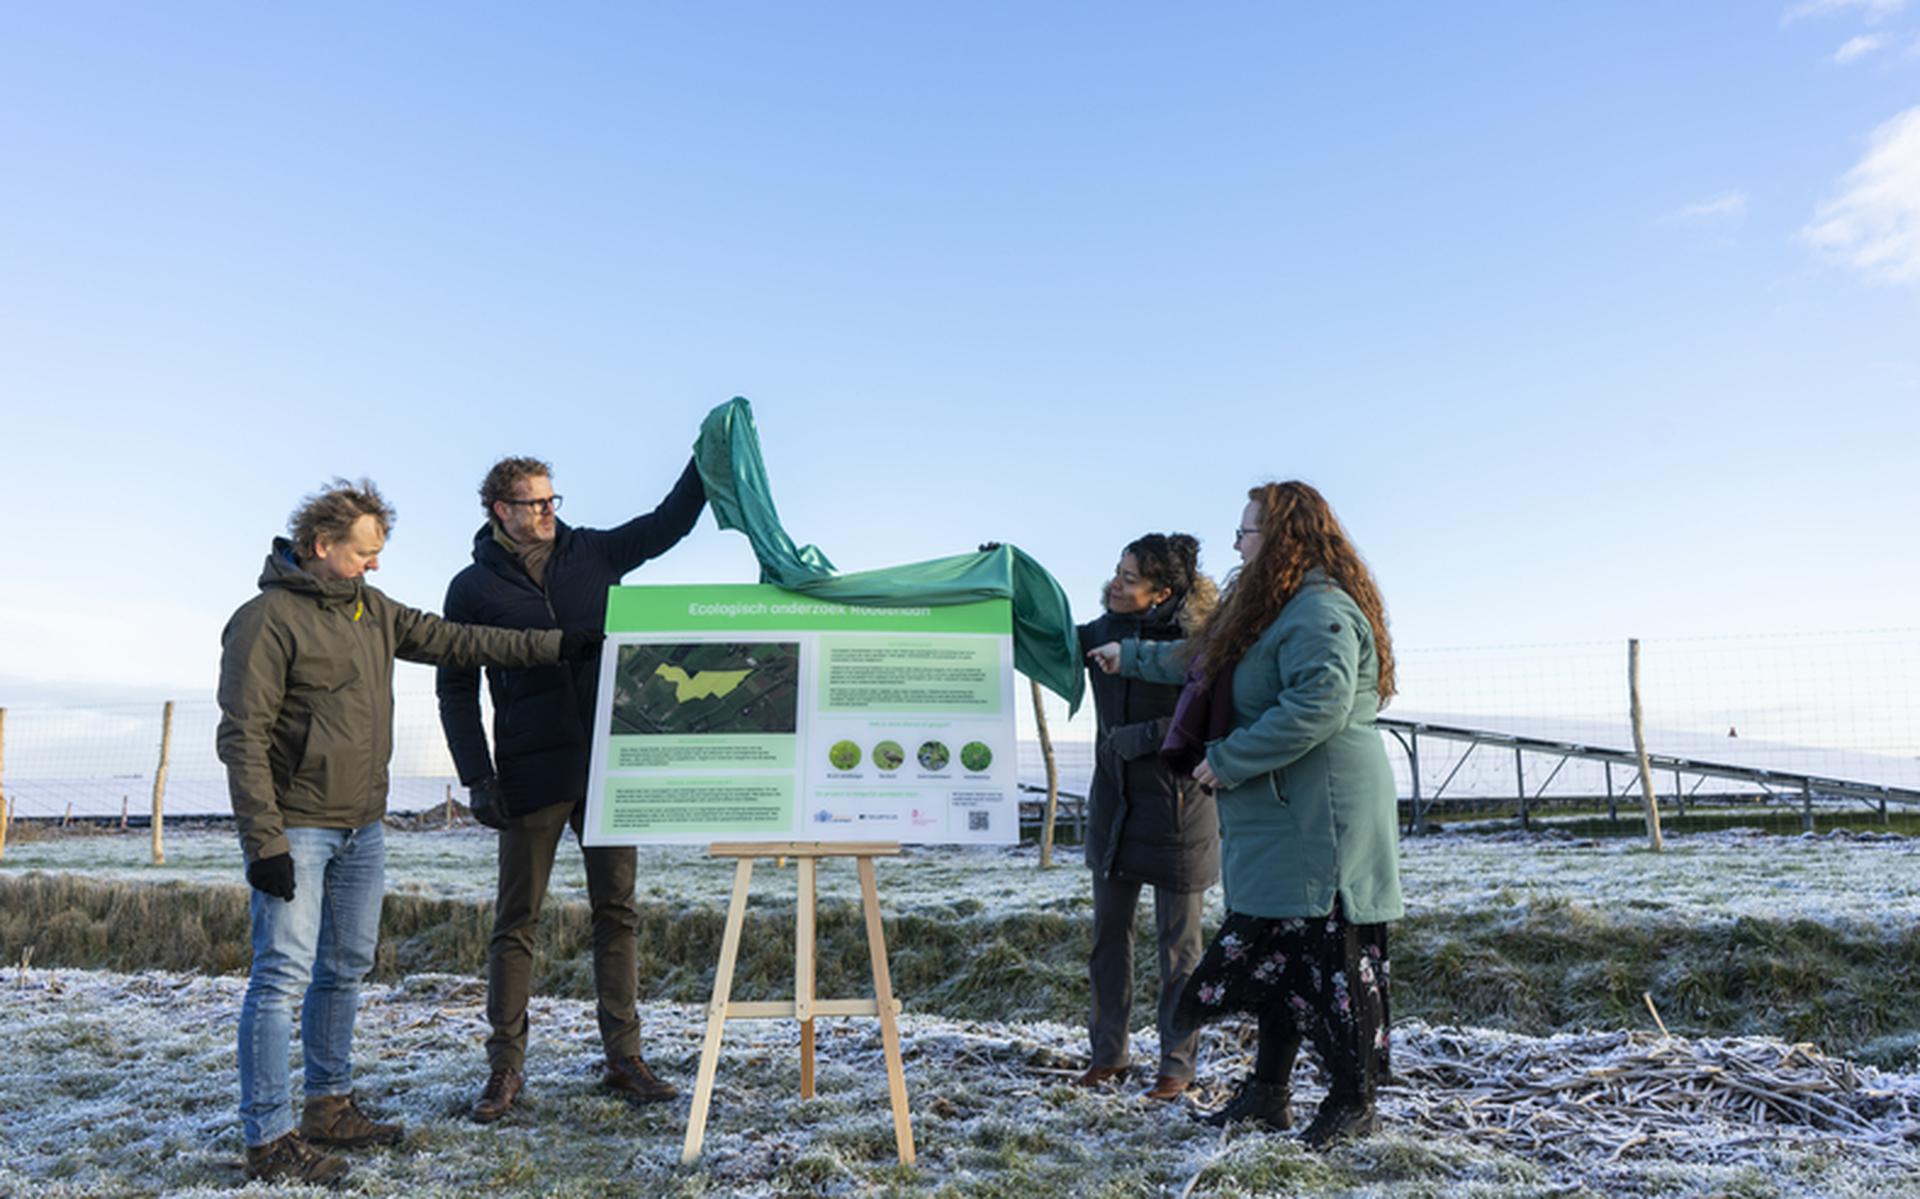 De onthulling van het bord met informatie over het ecologische onderzoek bij zonnepark Roodehaan. Foto: Provincie Groningen